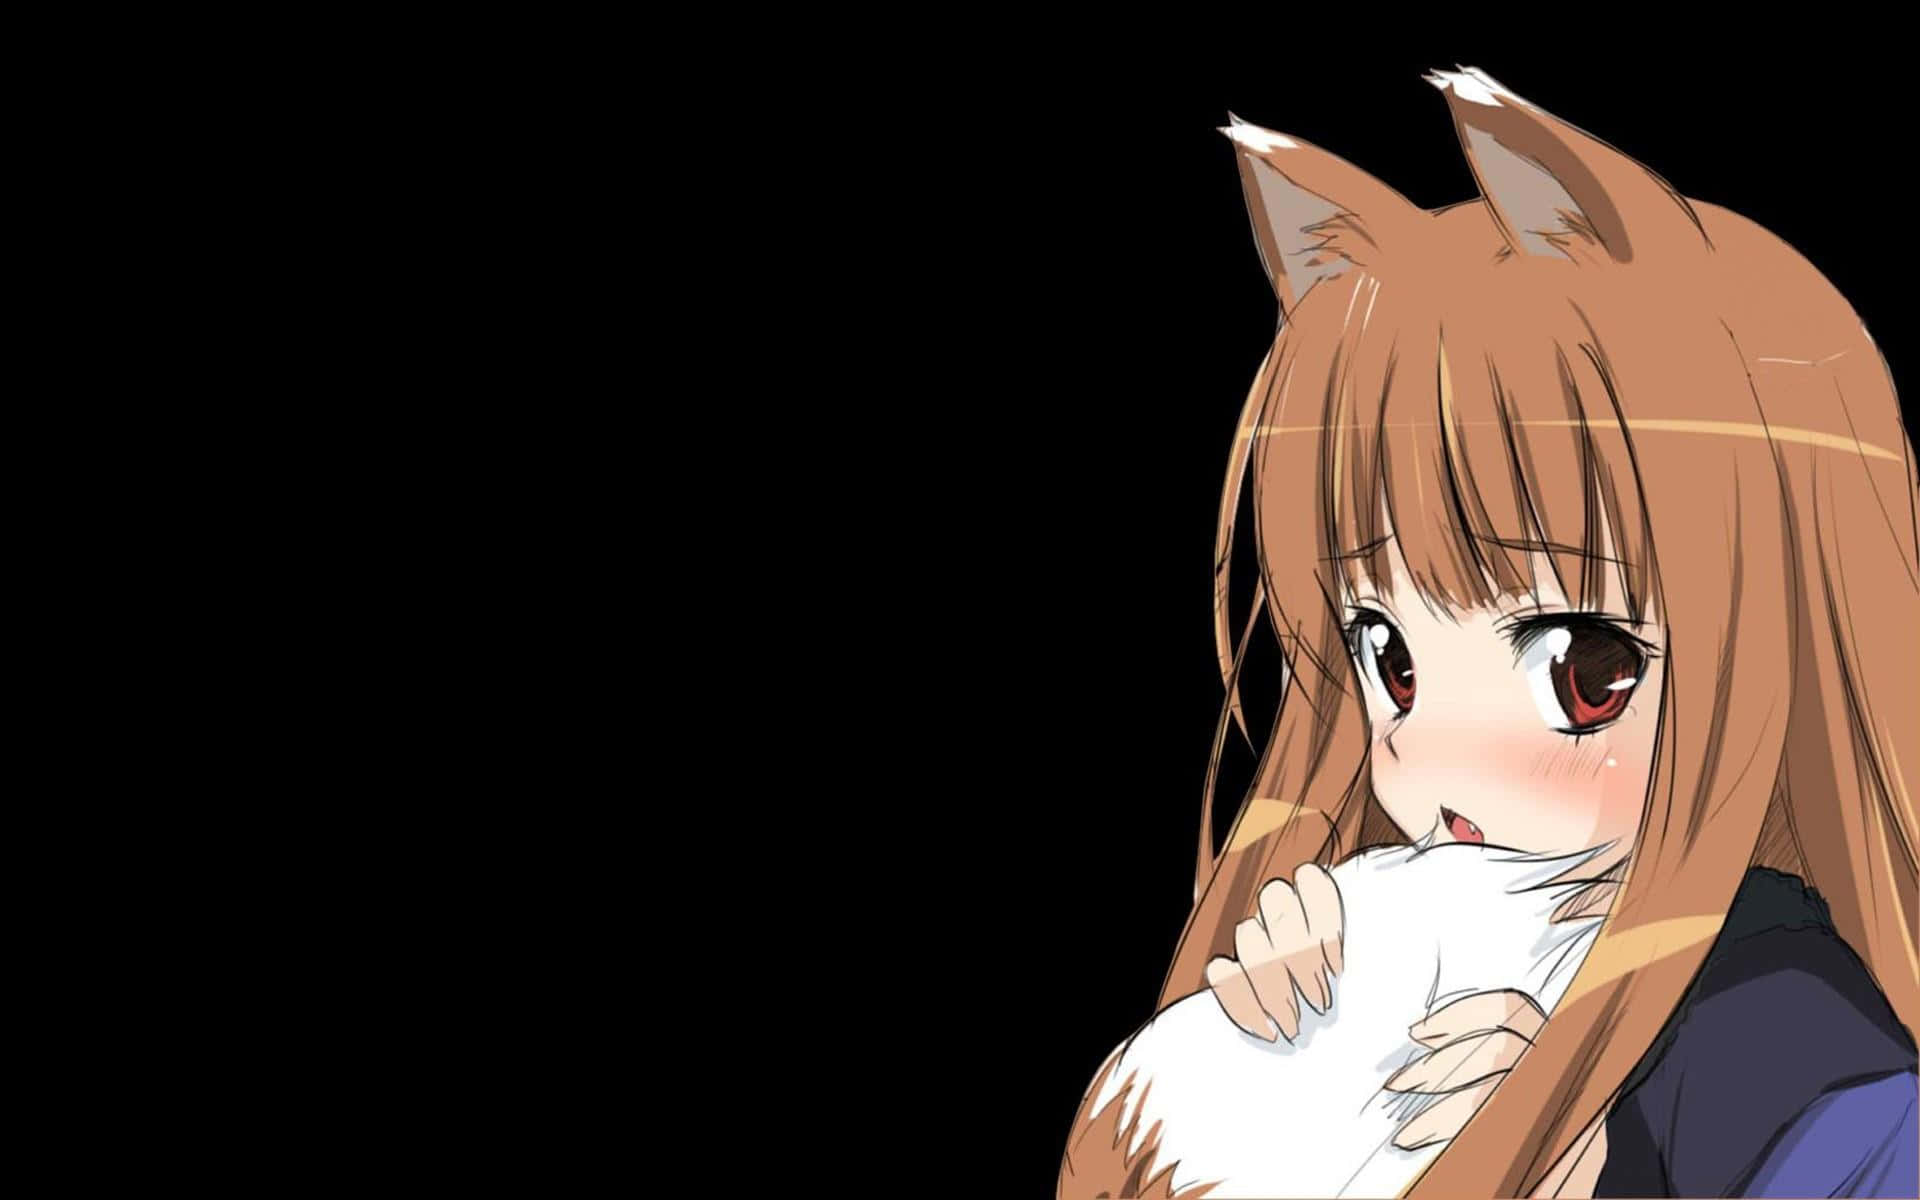 Einsüßes Anime-wolfsmädchen Mit Einem Großen Lächeln. Wallpaper